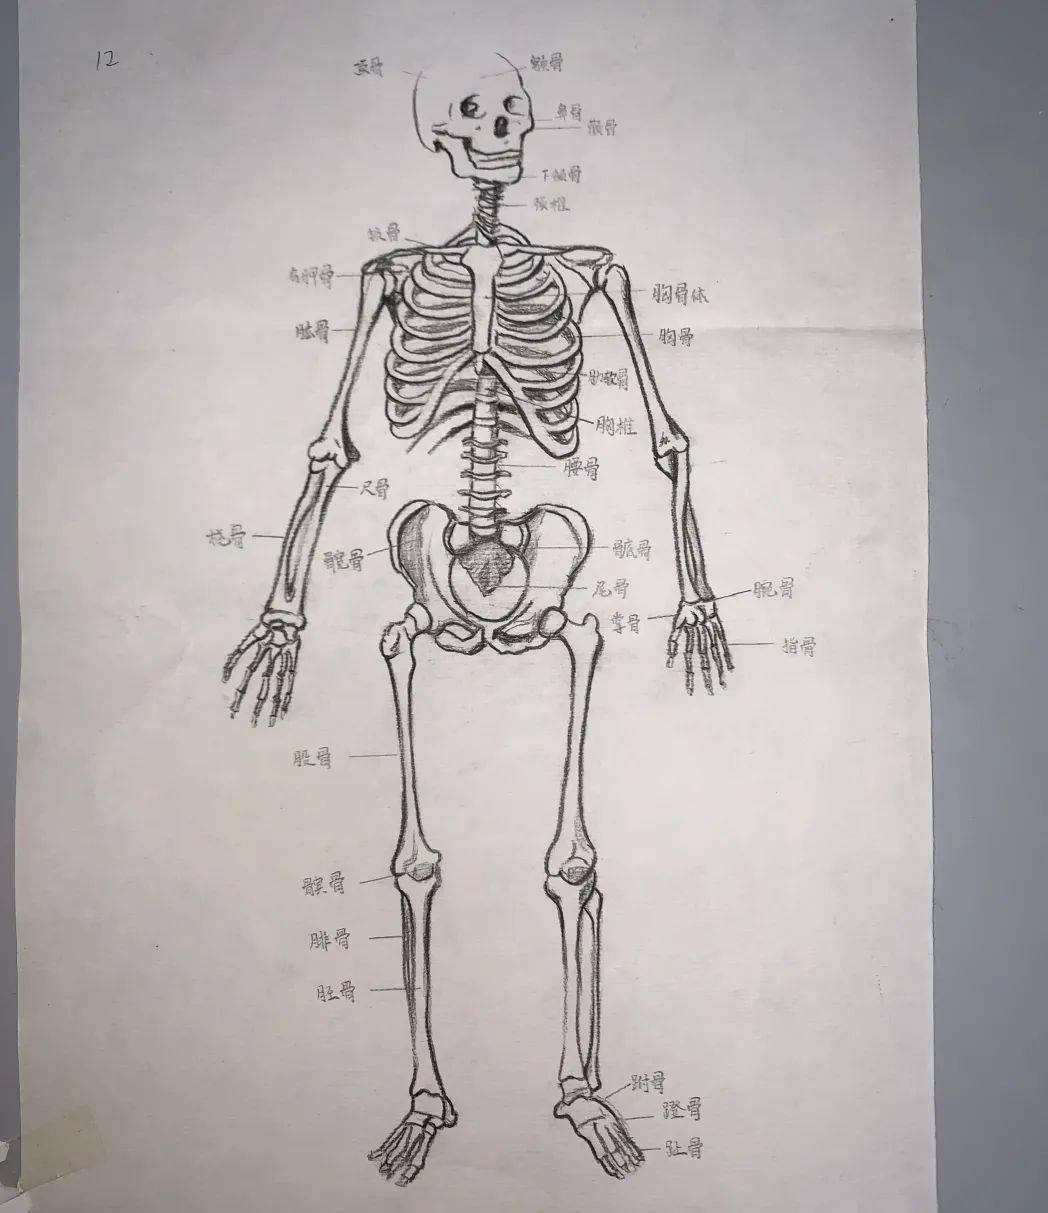 北京卫生职业学院医学技术系学生解剖绘图大赛完美落幕